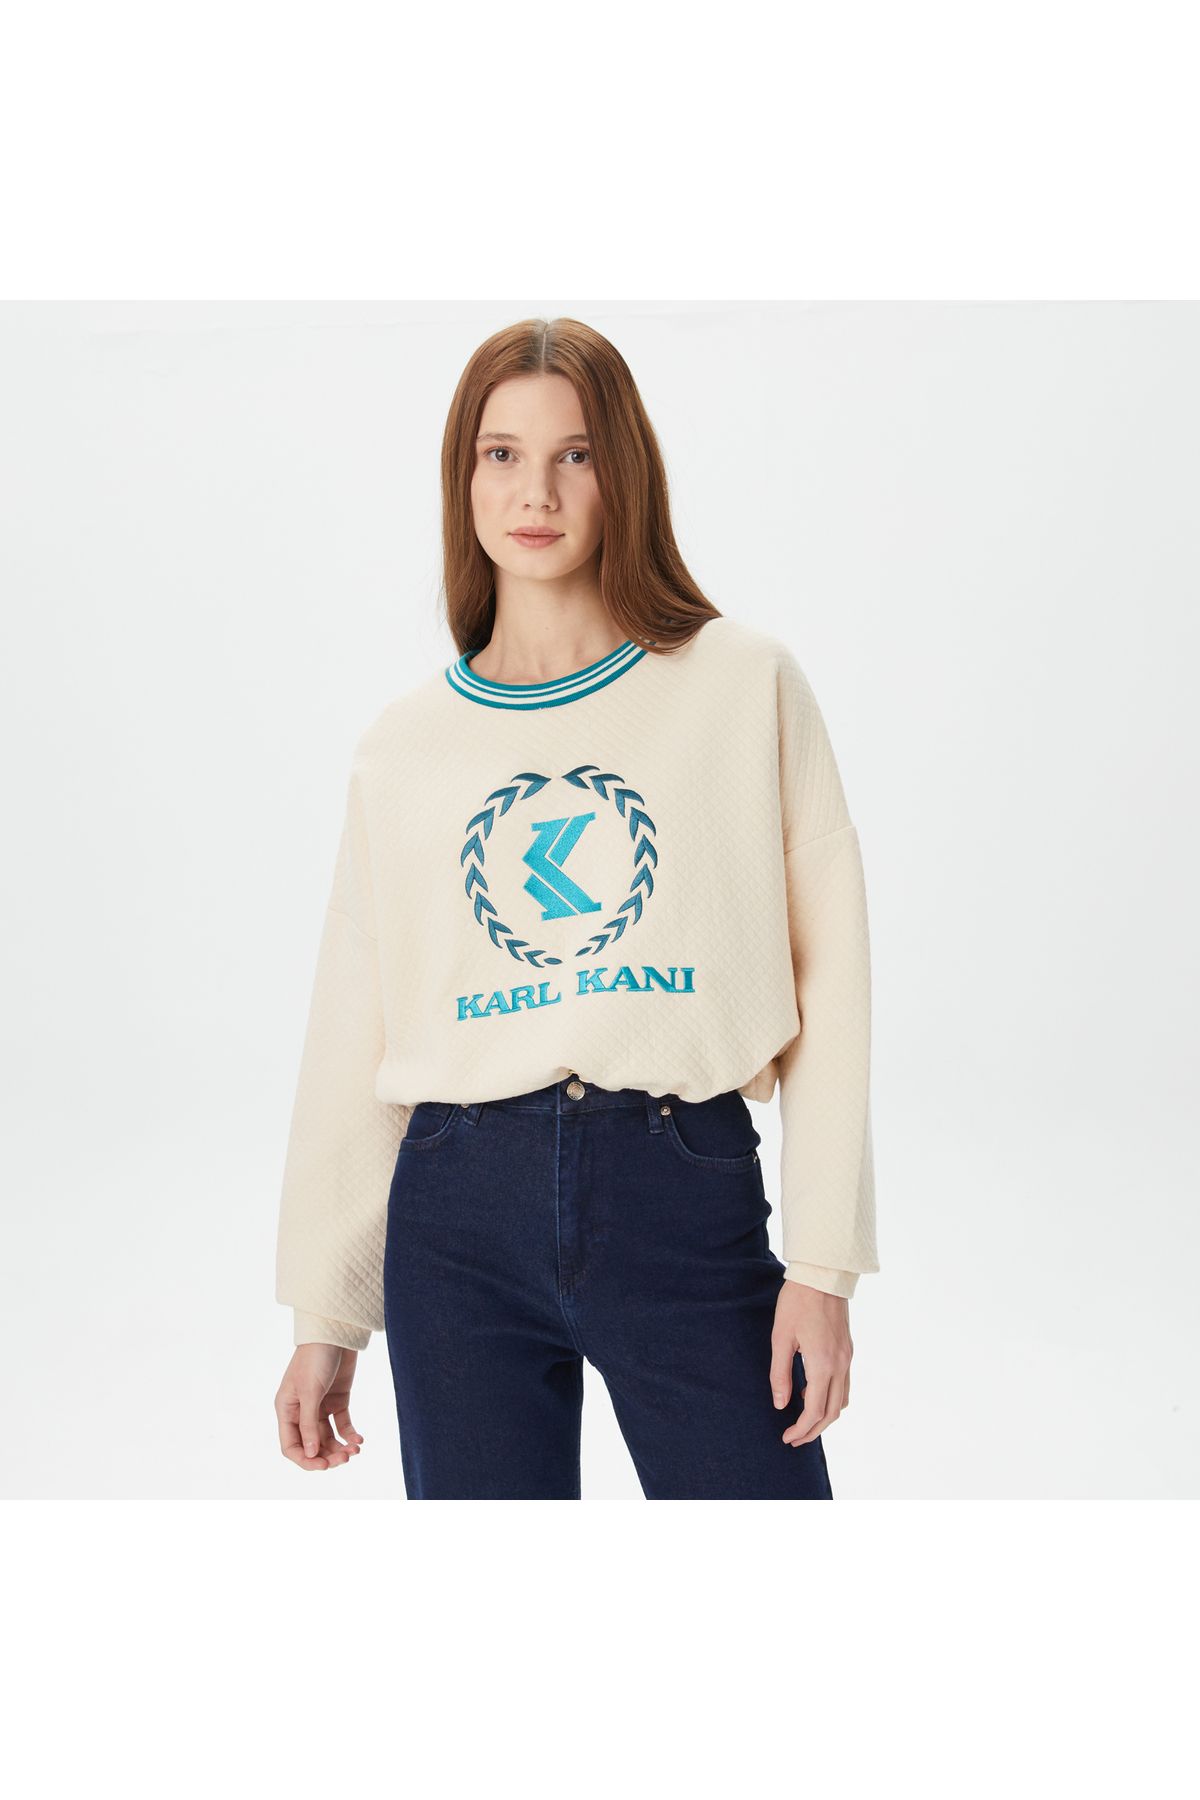 KARL KANI Signature Kadın Beyaz Sweatshirt